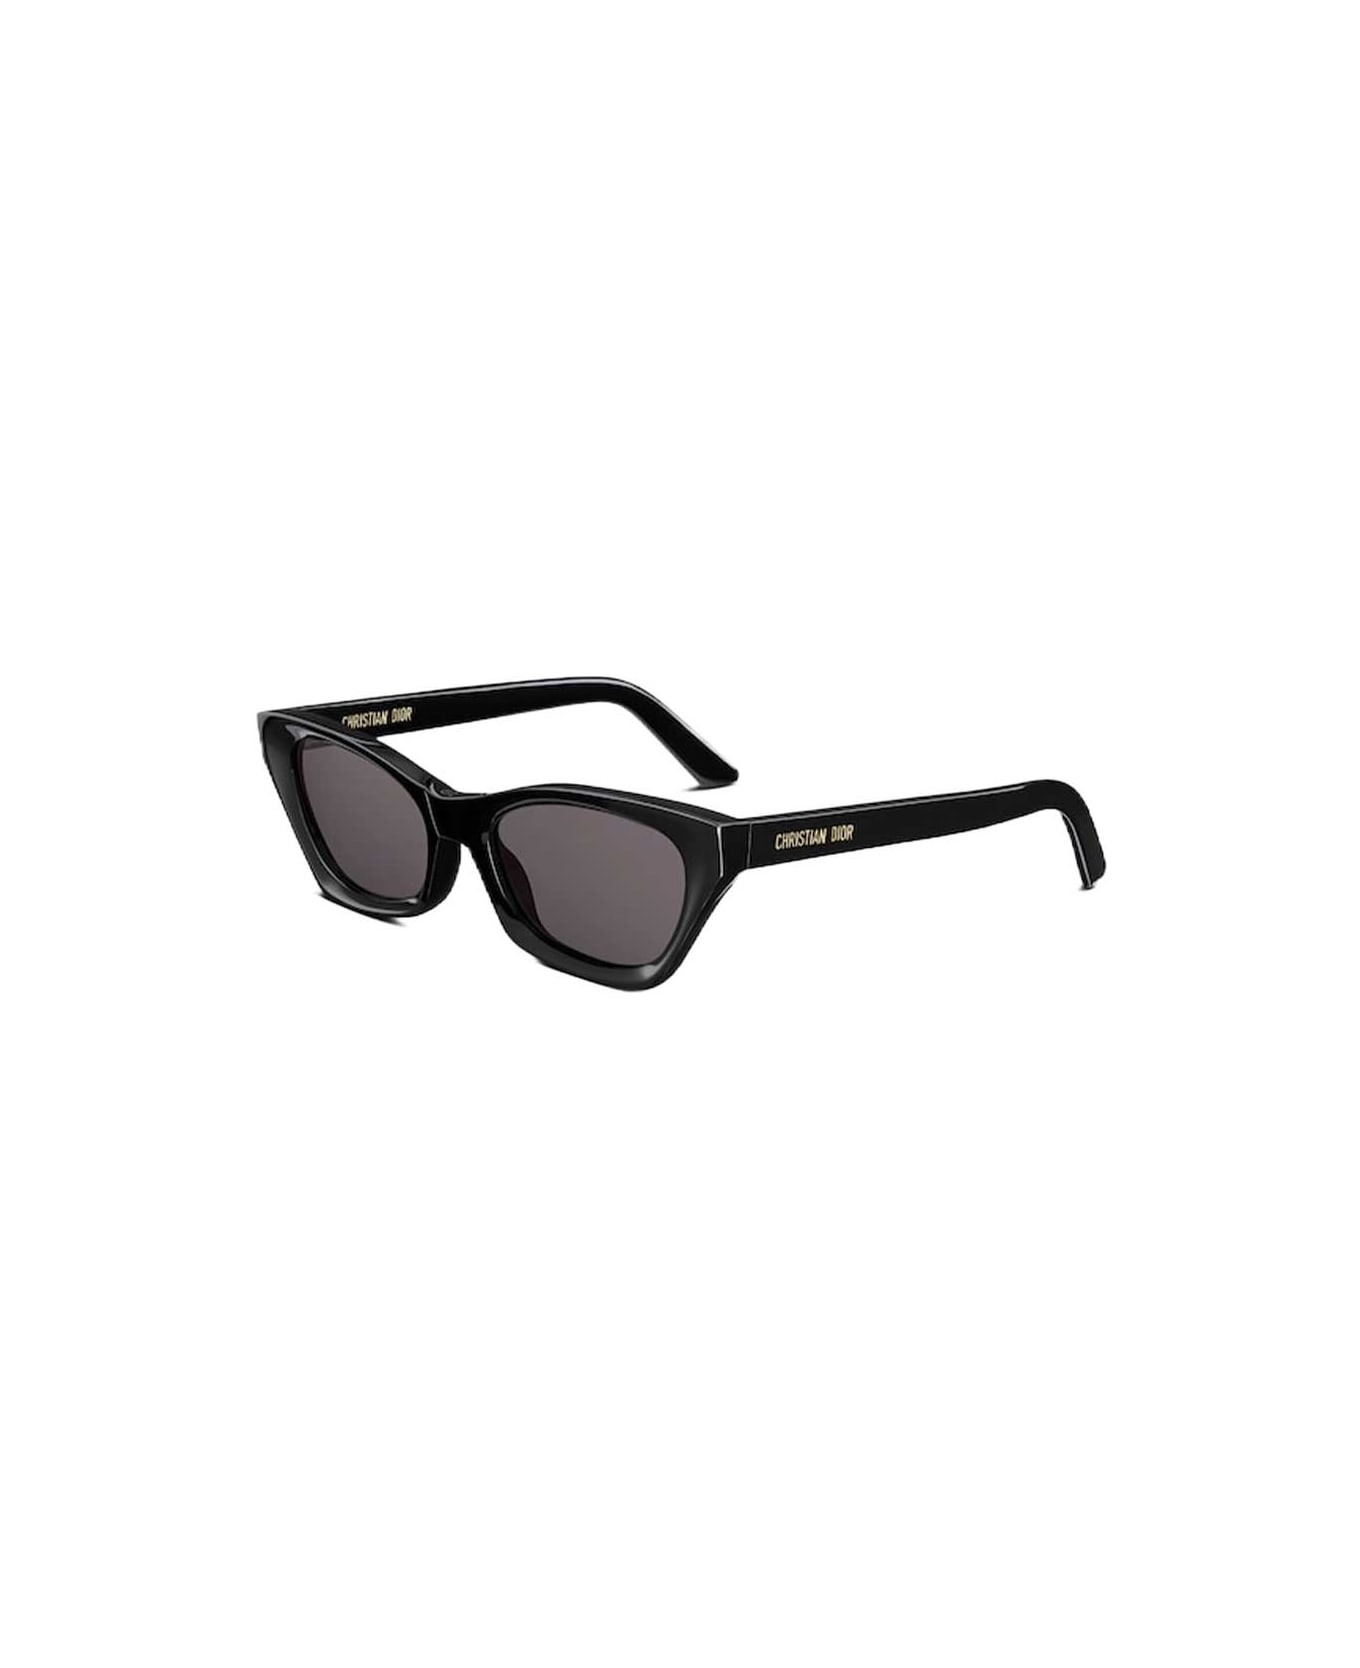 Dior Eyewear Sunglasses - Nero/Nero